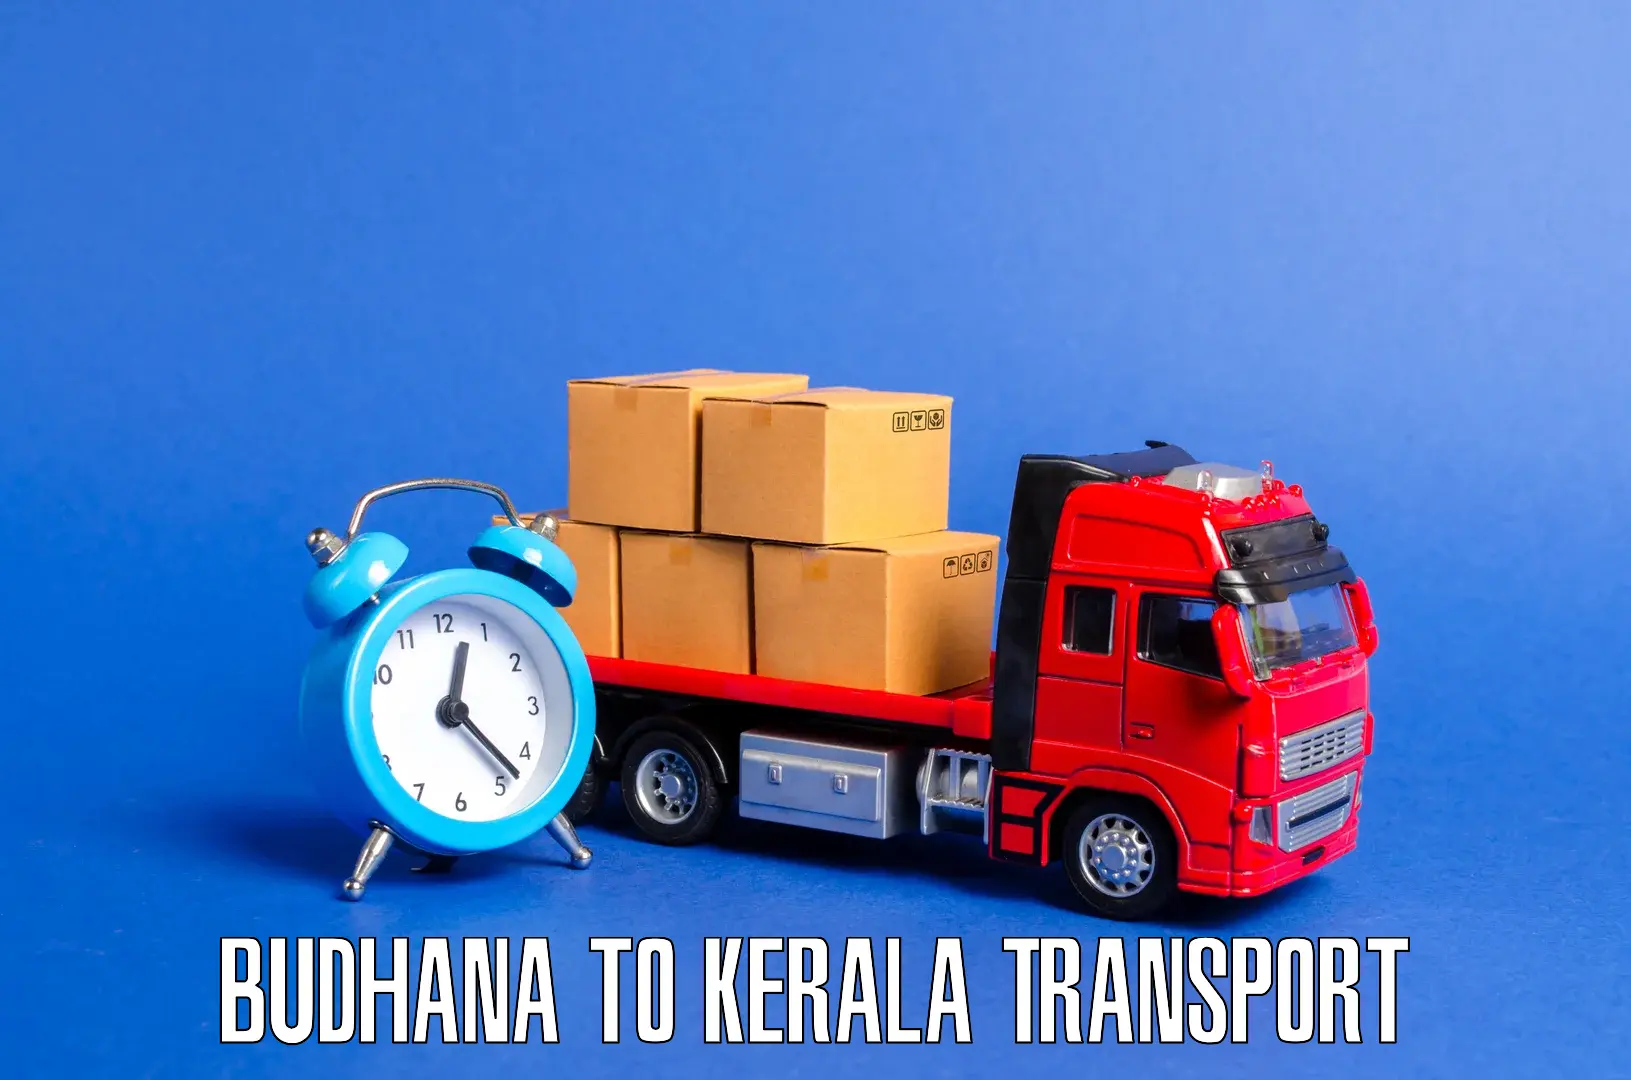 Daily transport service Budhana to Kalanjoor